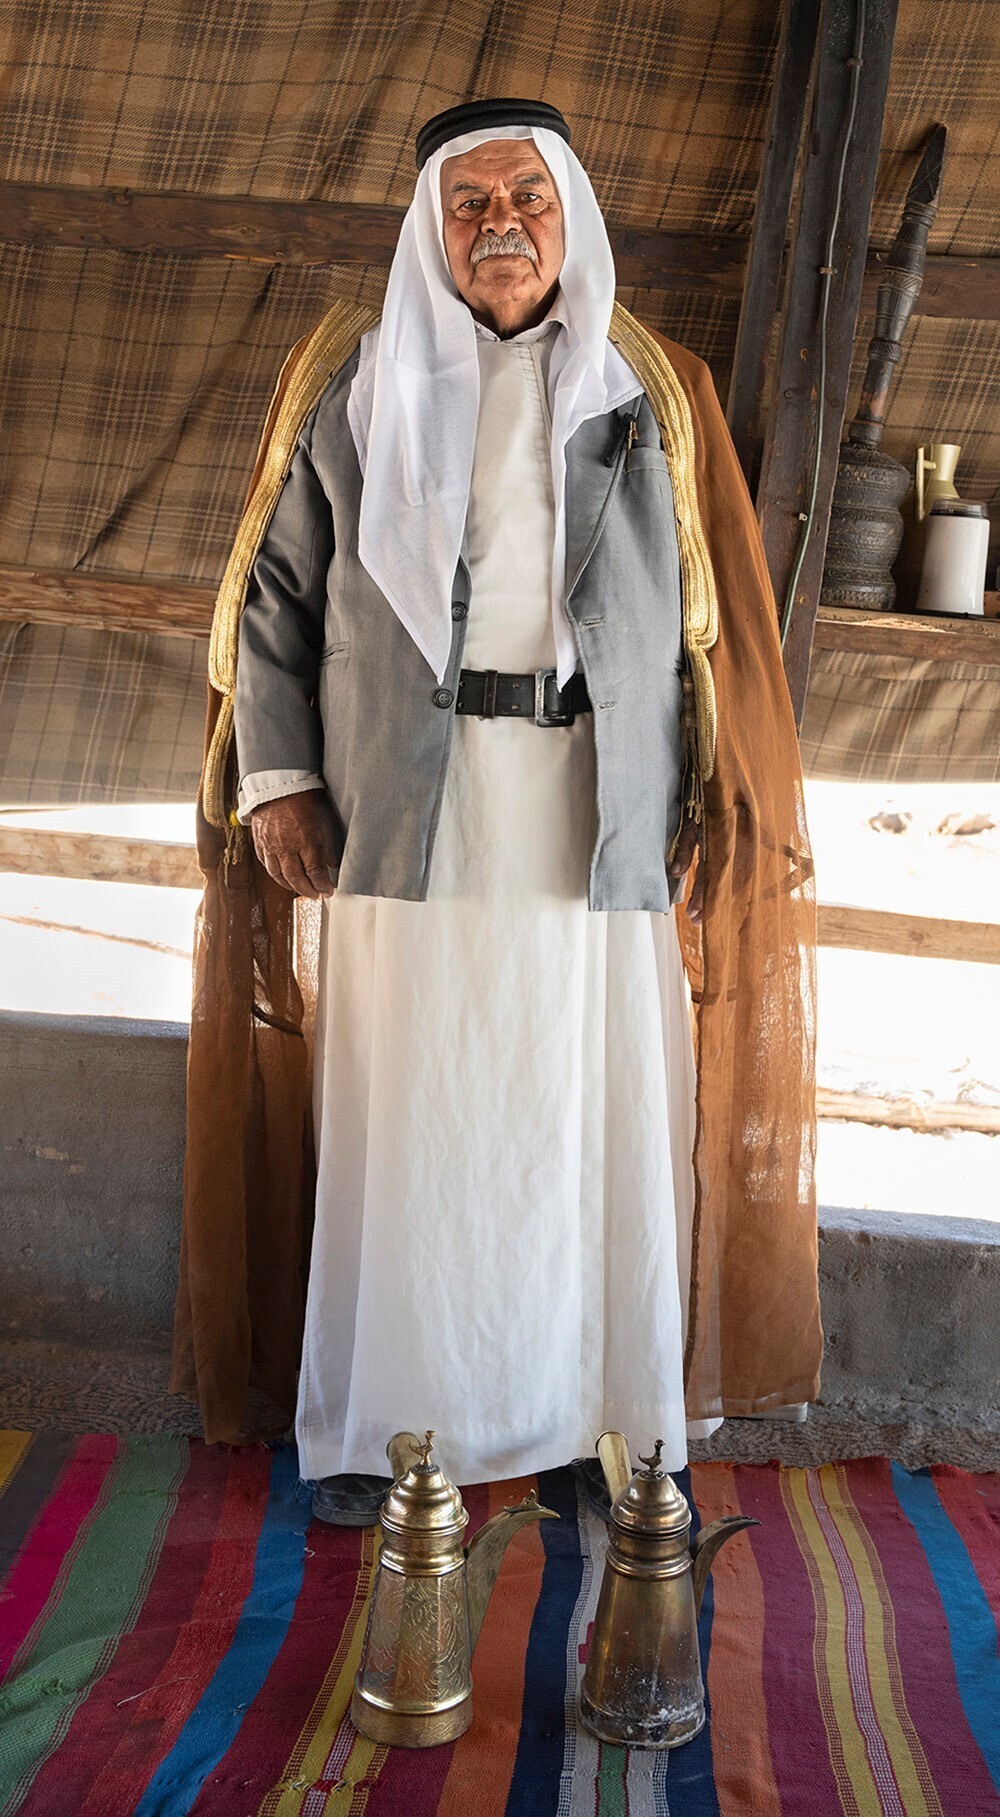 שייח איברהים אבו עיאדה - שבט אבו עיאדה - פזורה איזור ערד - צילום אריאל ואן סטרטן